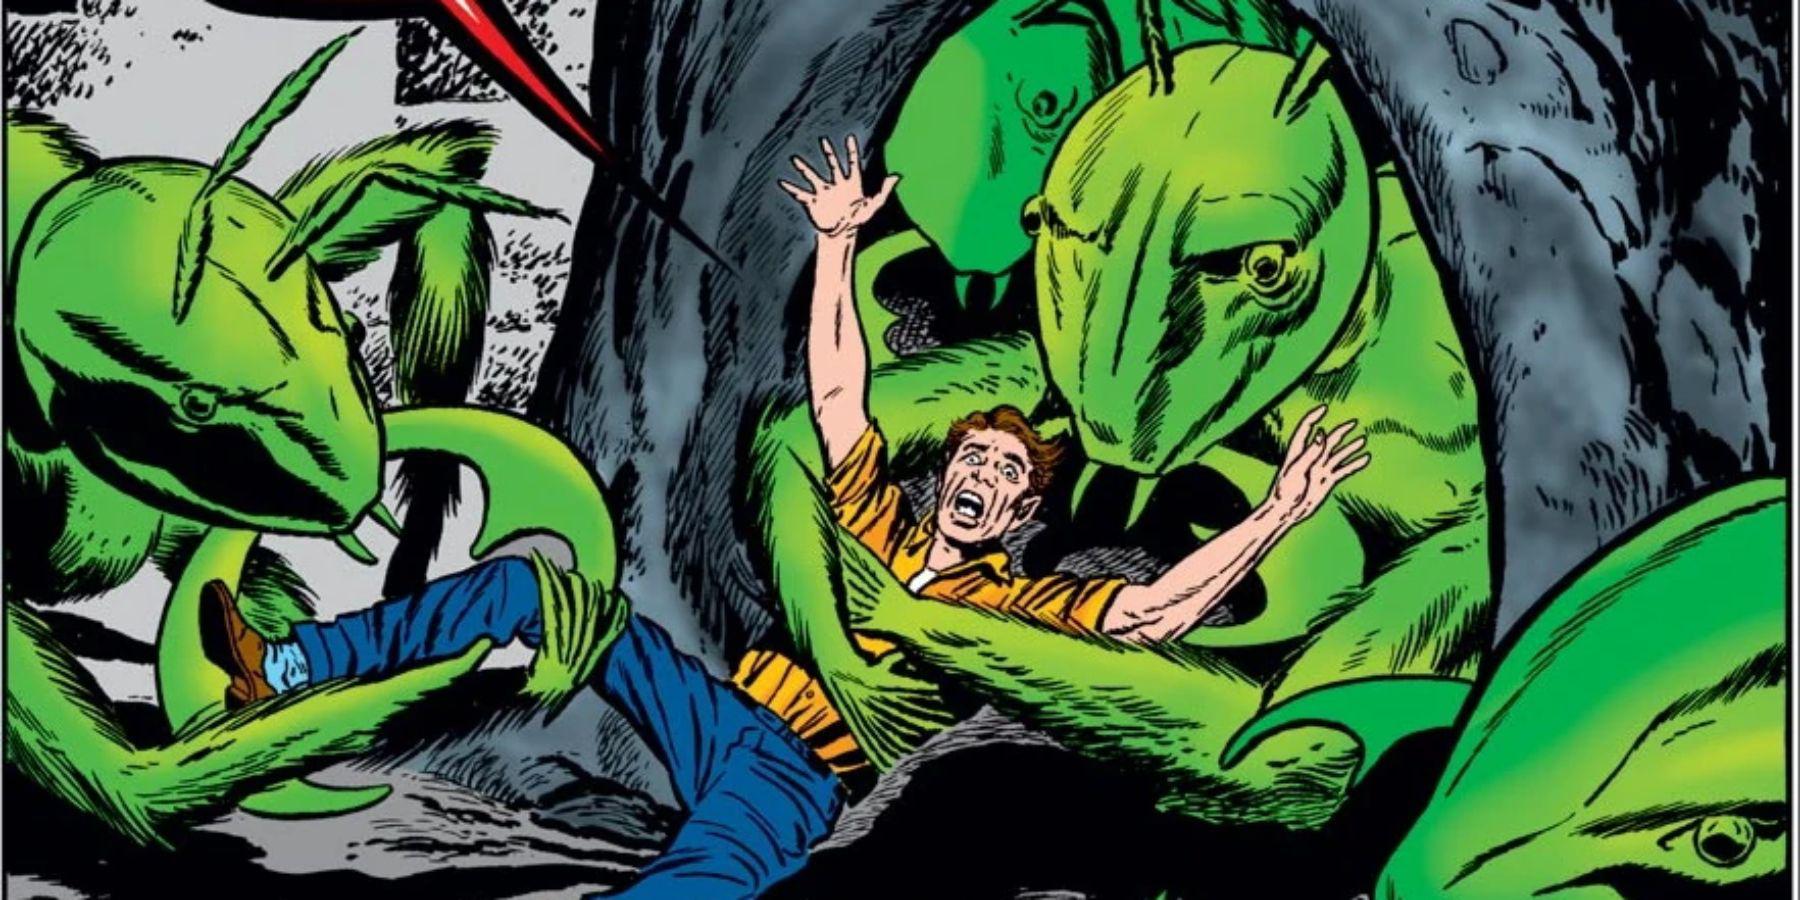 Homem-Formiga: as identidades de super-heróis de Hank Pym nos quadrinhos, explicadas